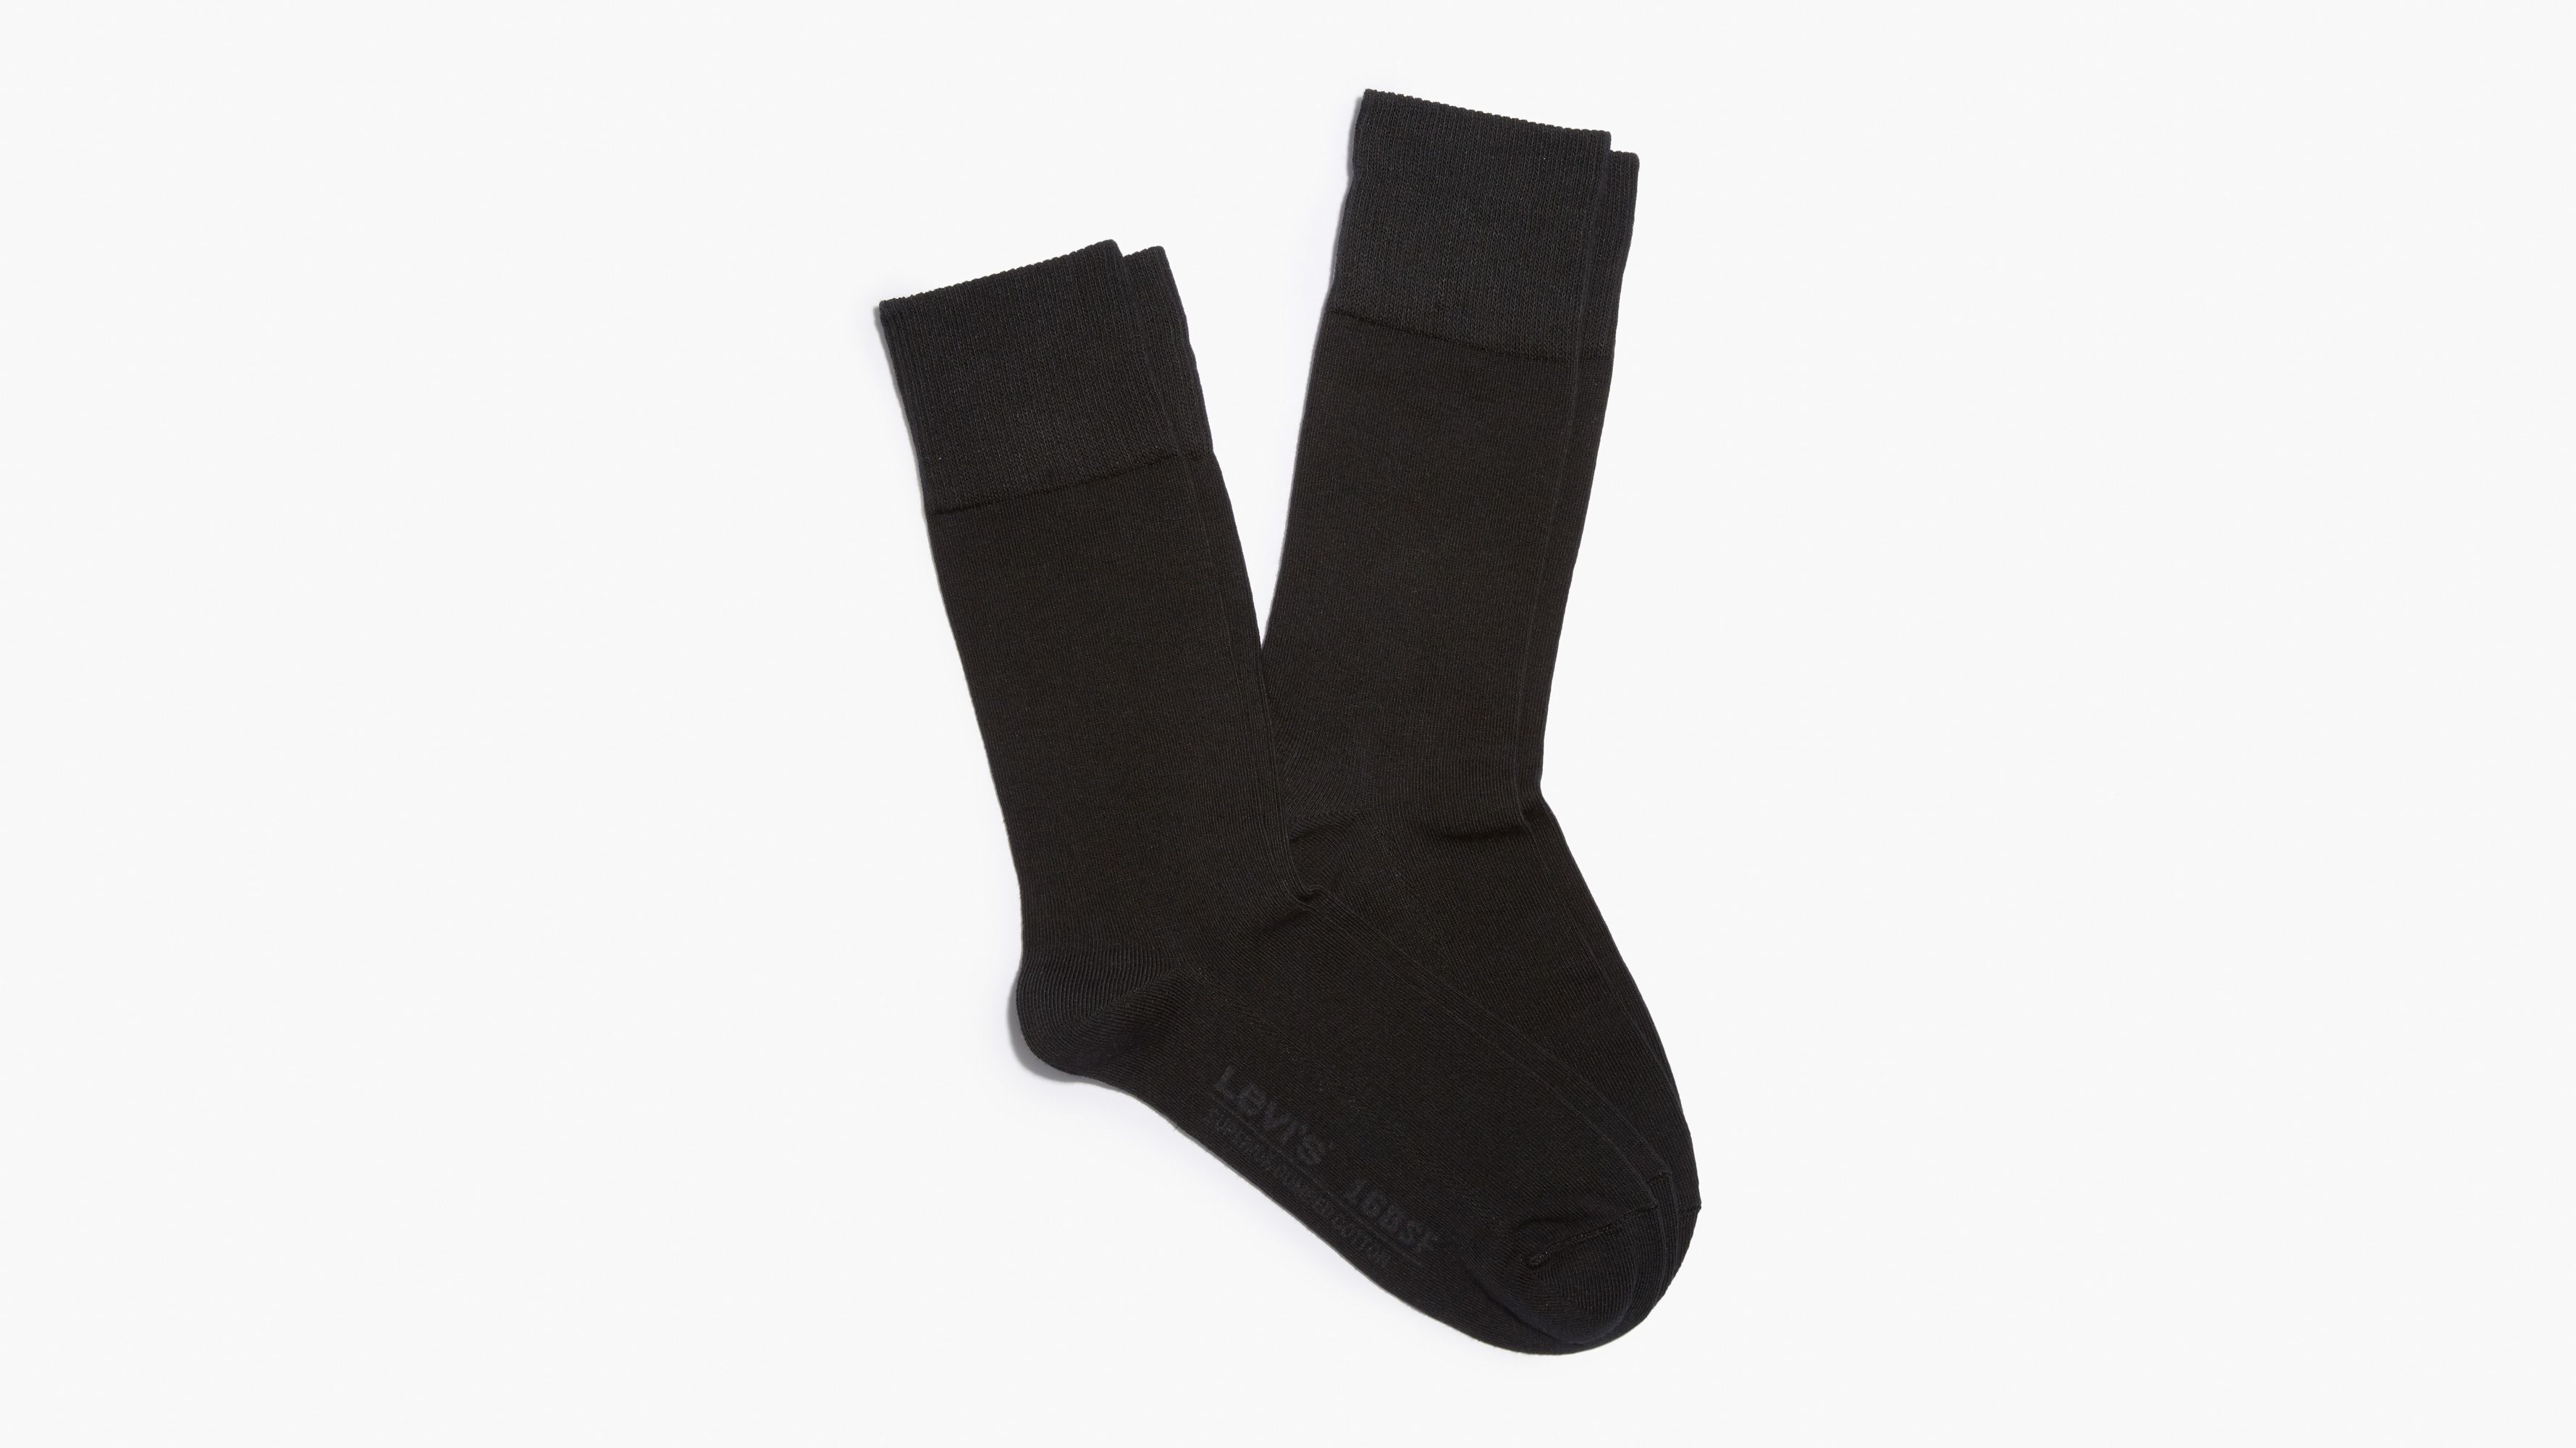 levi's socks